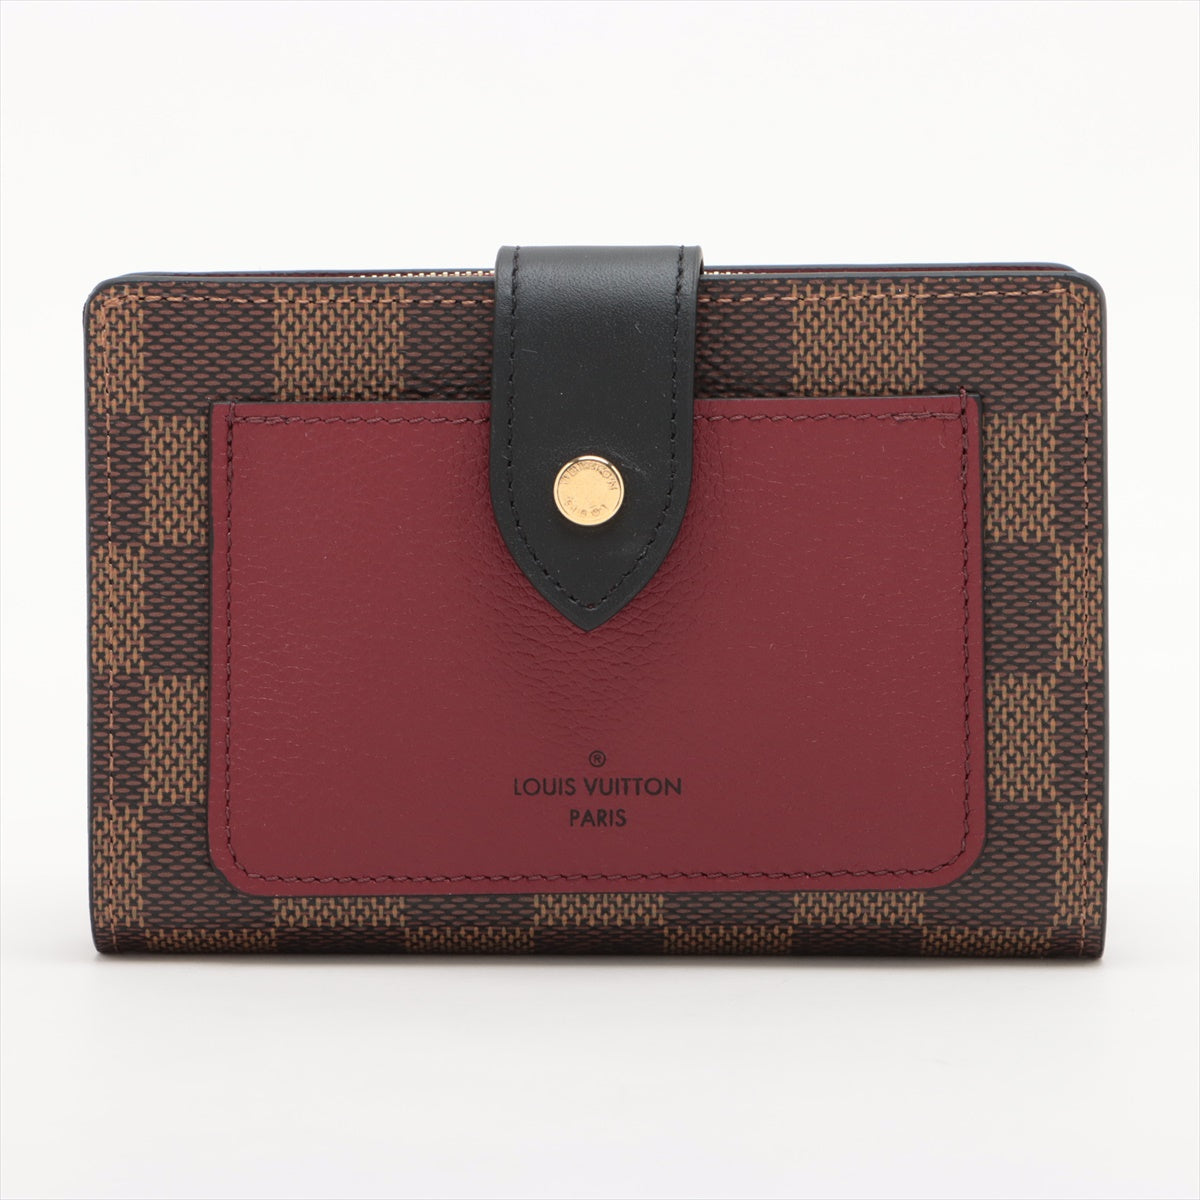 Louis Vuitton Damier Portefeuilles Juliette N60381 Bordeaux Compact Wallet